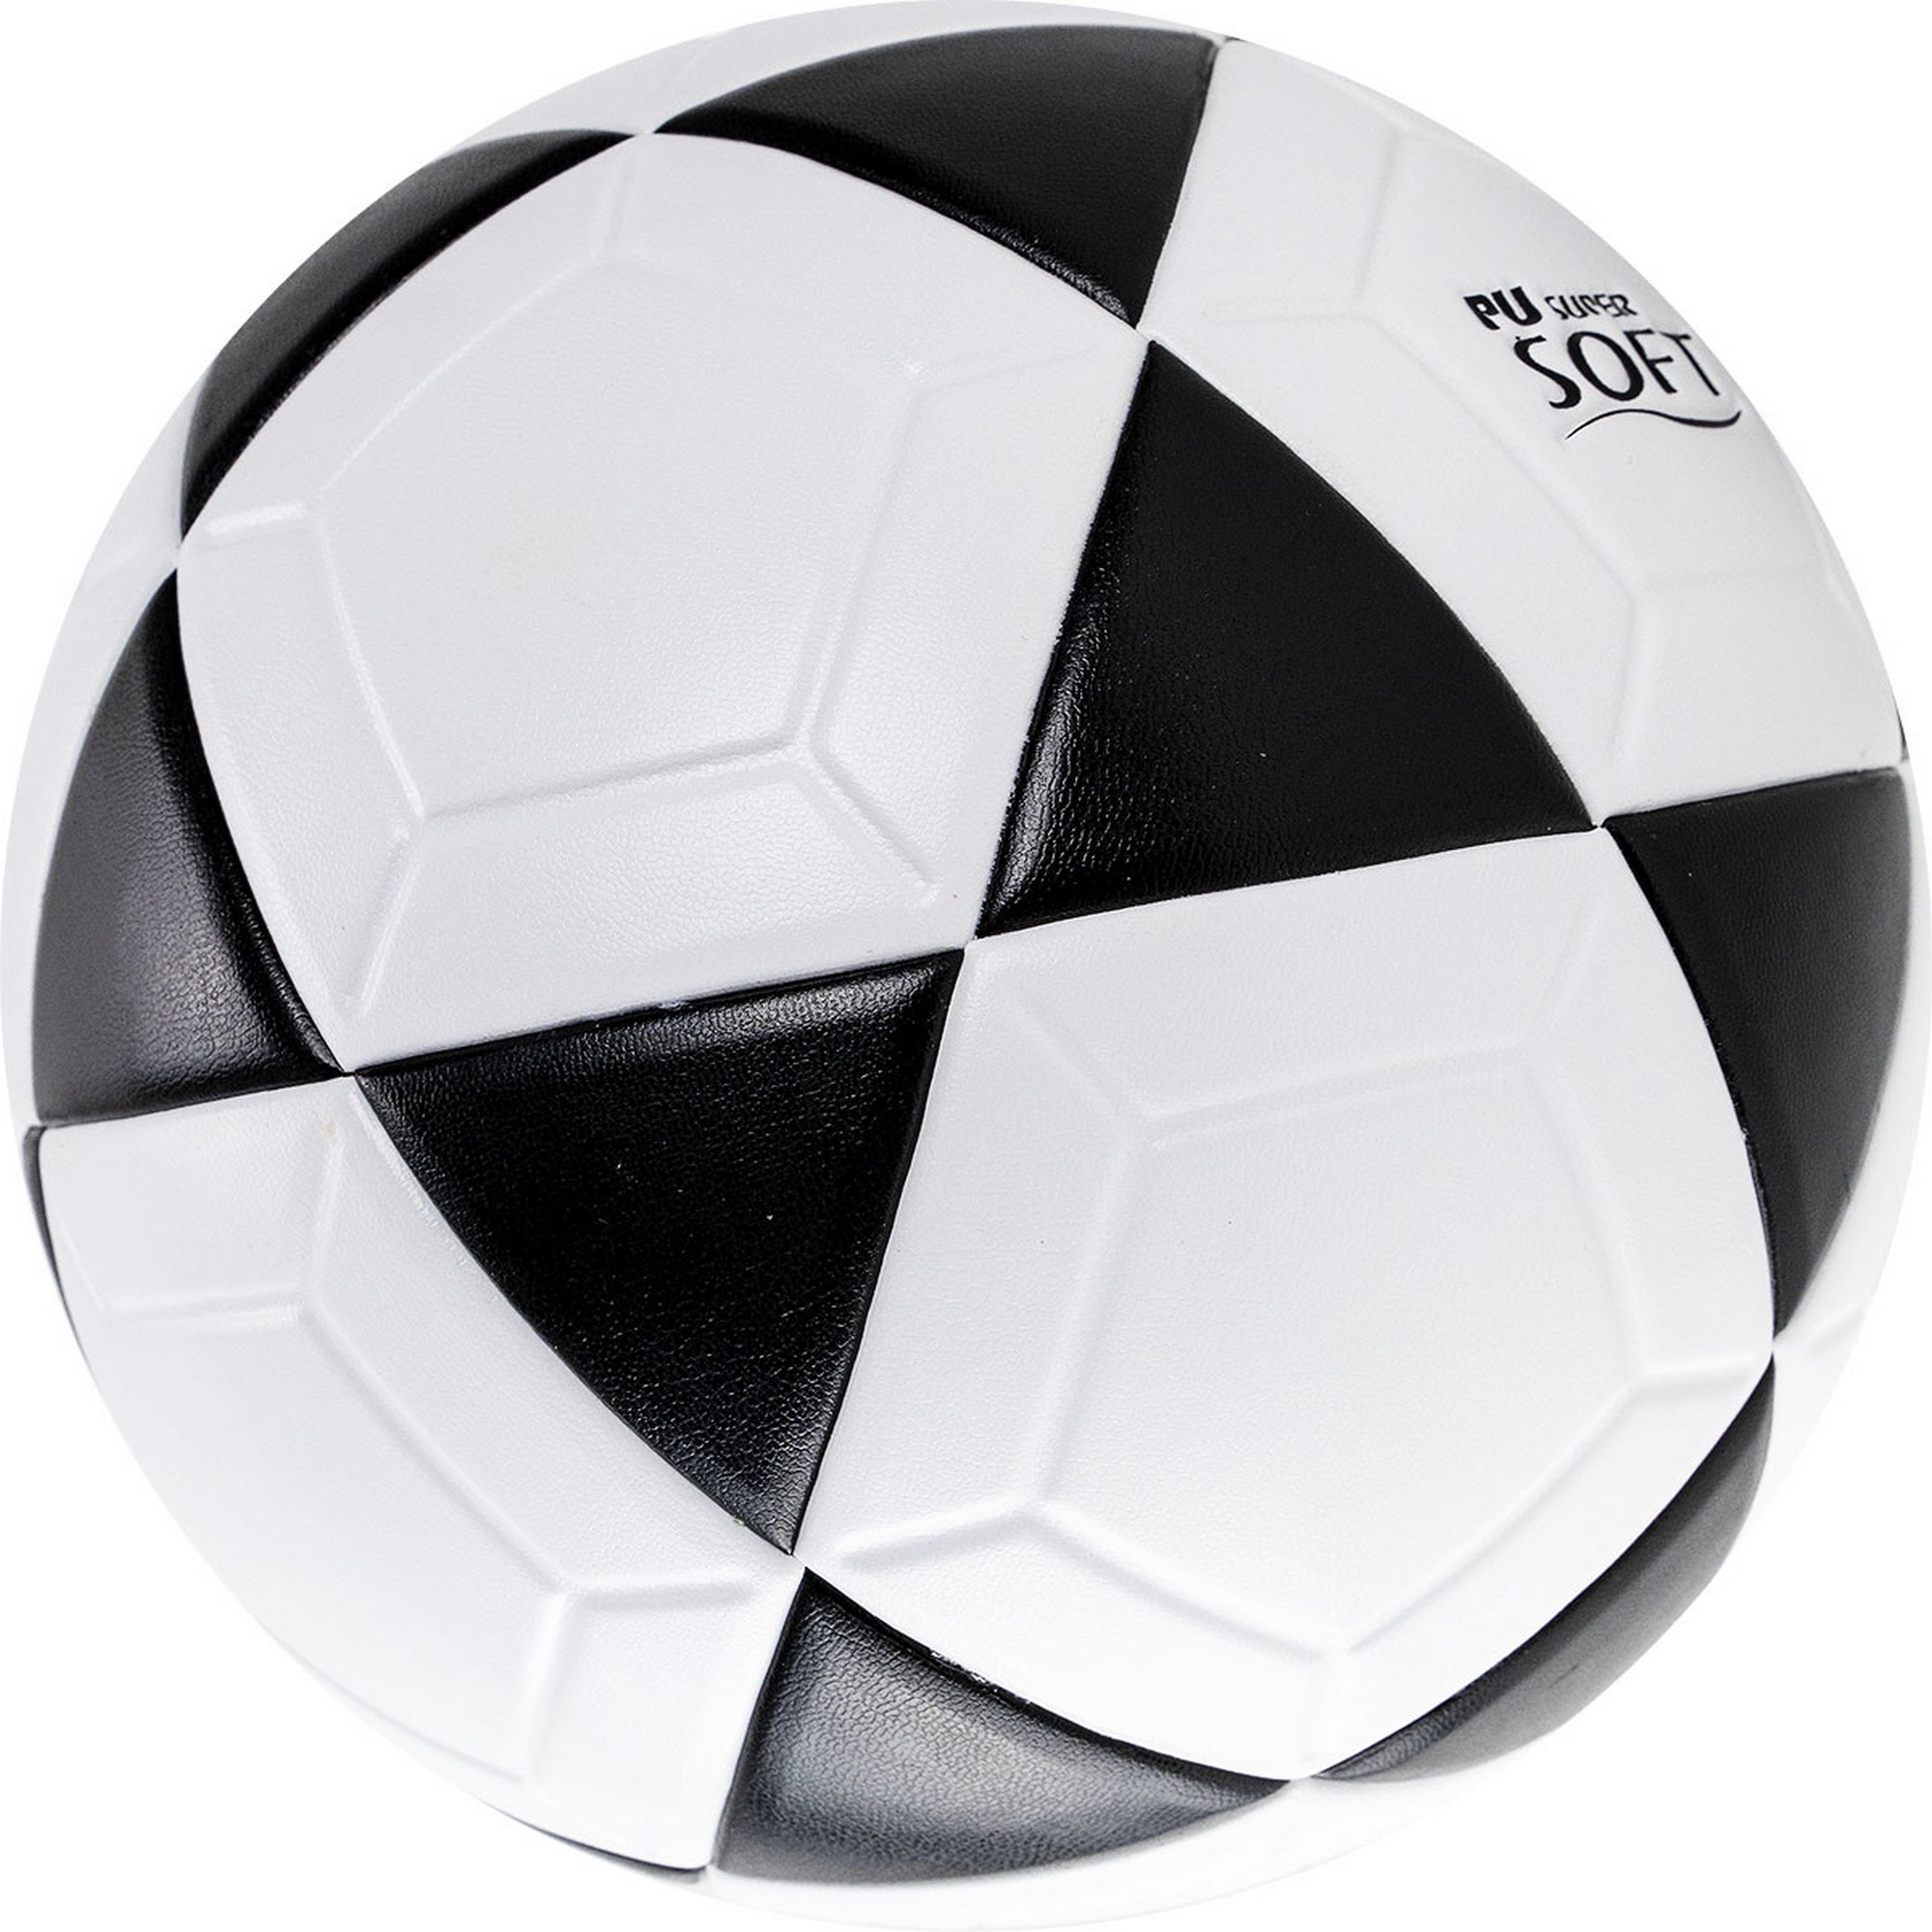 Мяч для футволея Penalty BOLA FUTEVOLEI ALTINHA XXI 5213101110-U р.5 2000_2000